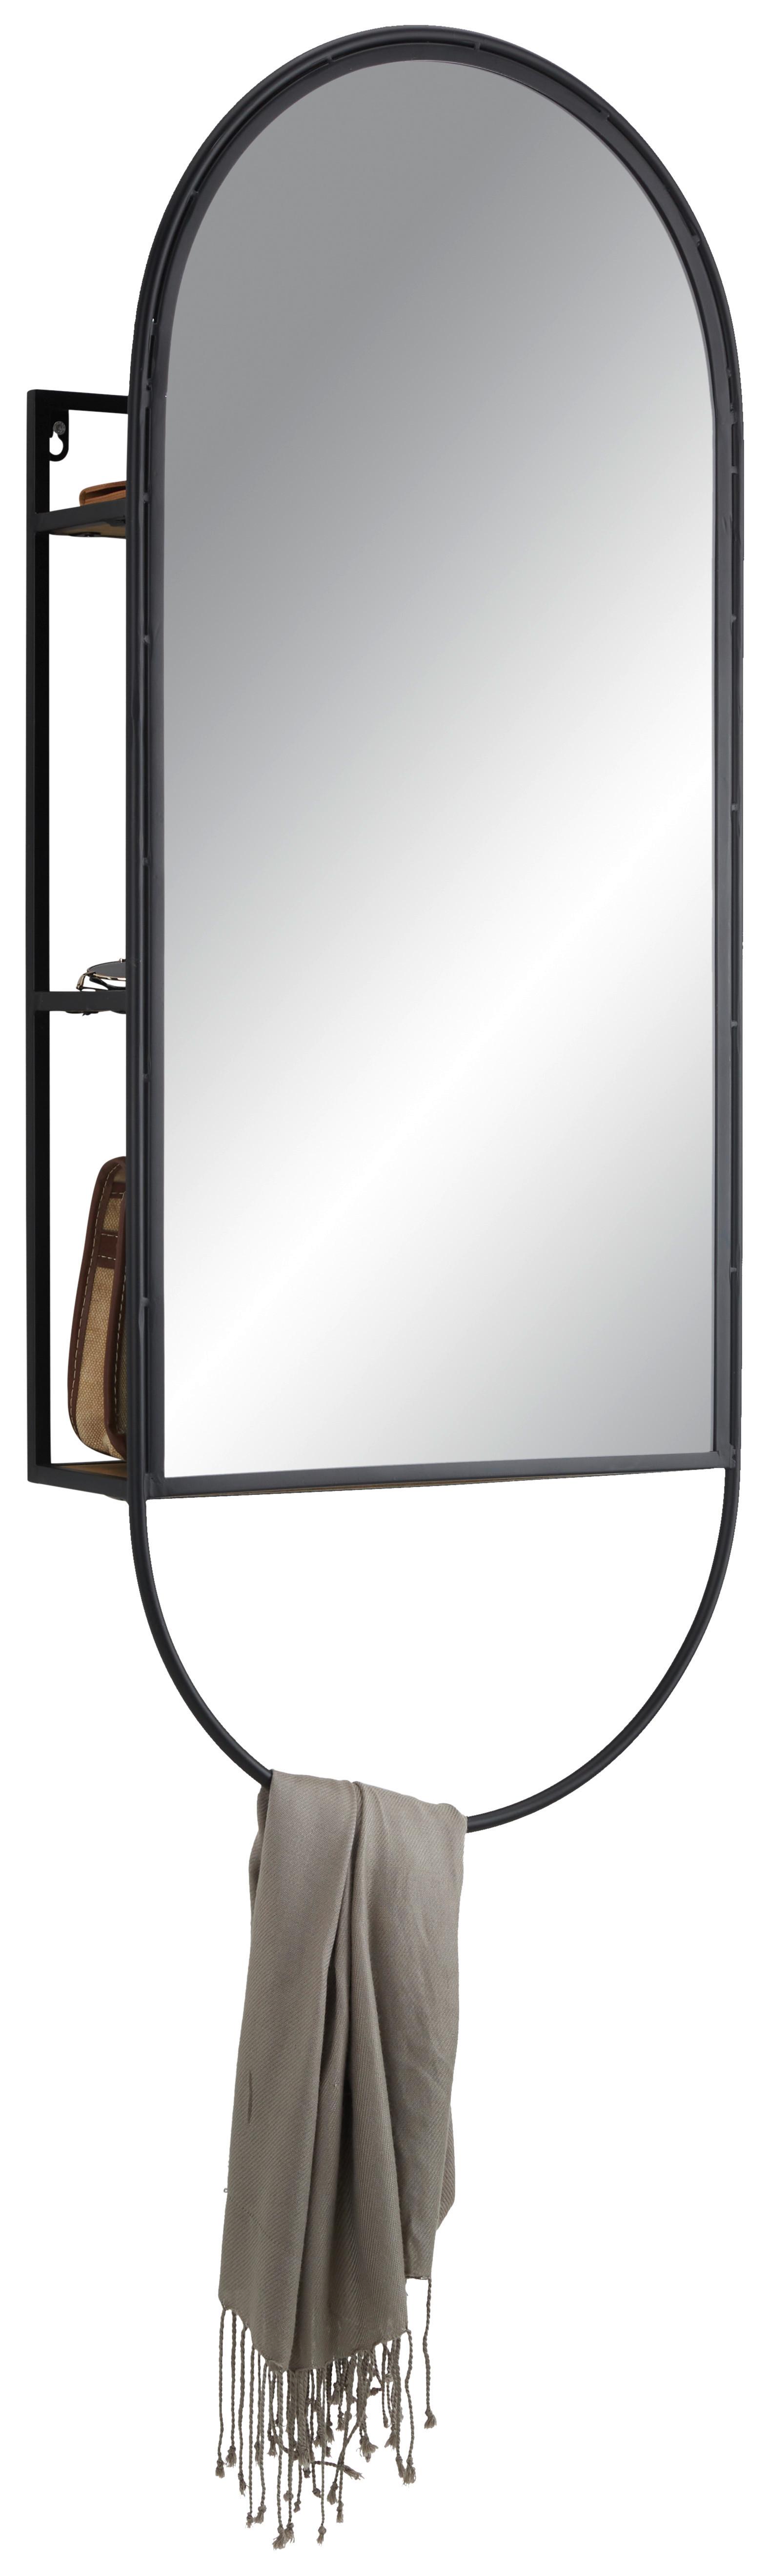 Zrkadlo Mira -Trend- - čierna, Štýlový, kov/drevo (40/100/12cm) - Premium Living